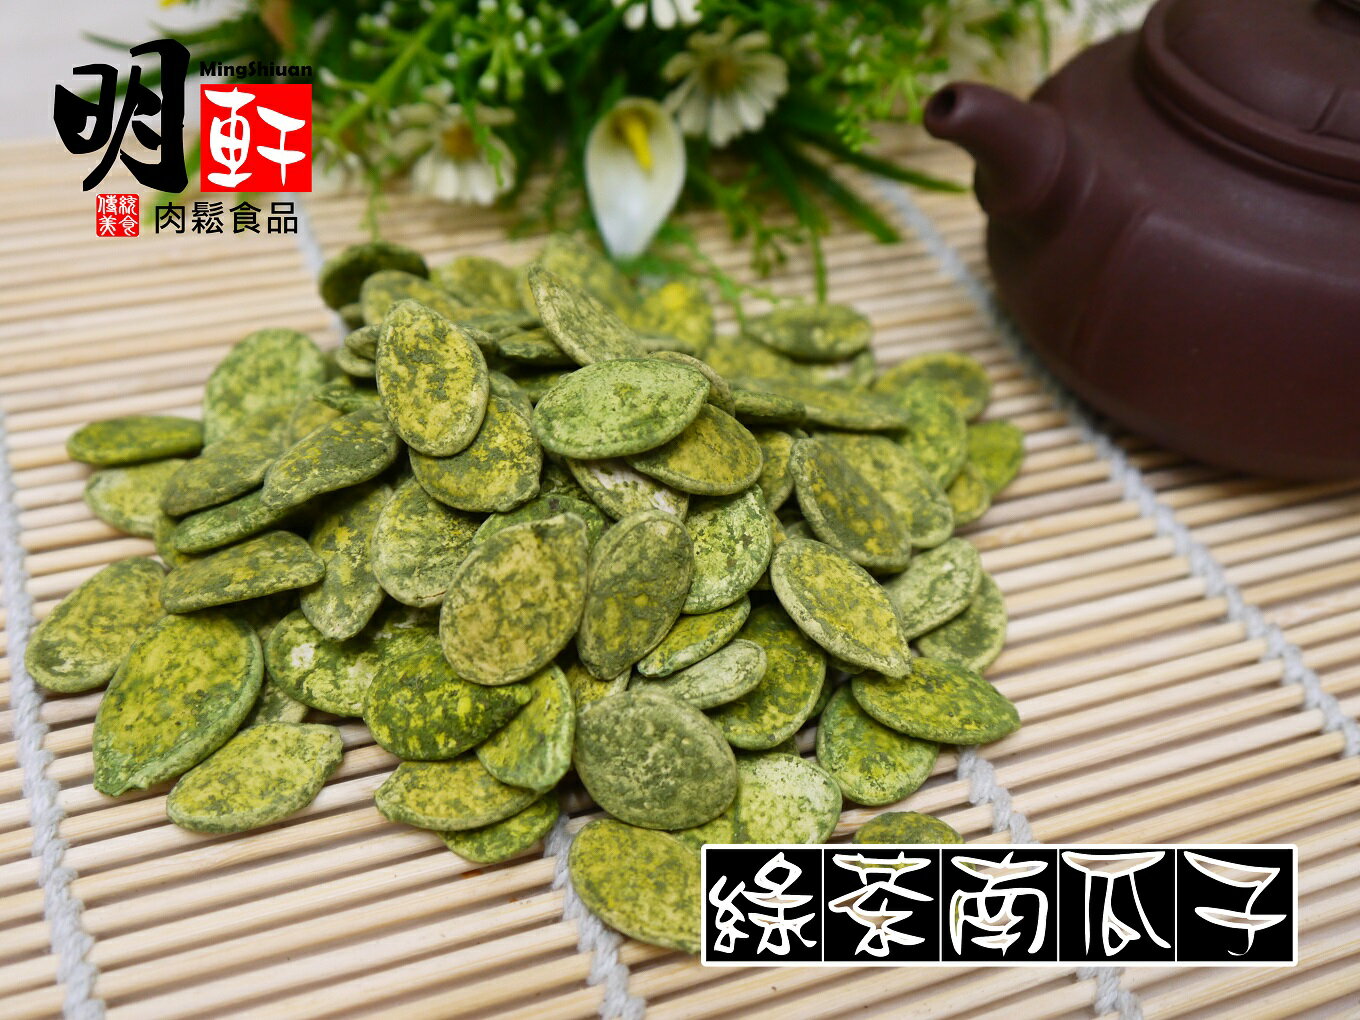 【明軒肉鬆食品】綠茶瓜子~分享包(700g)